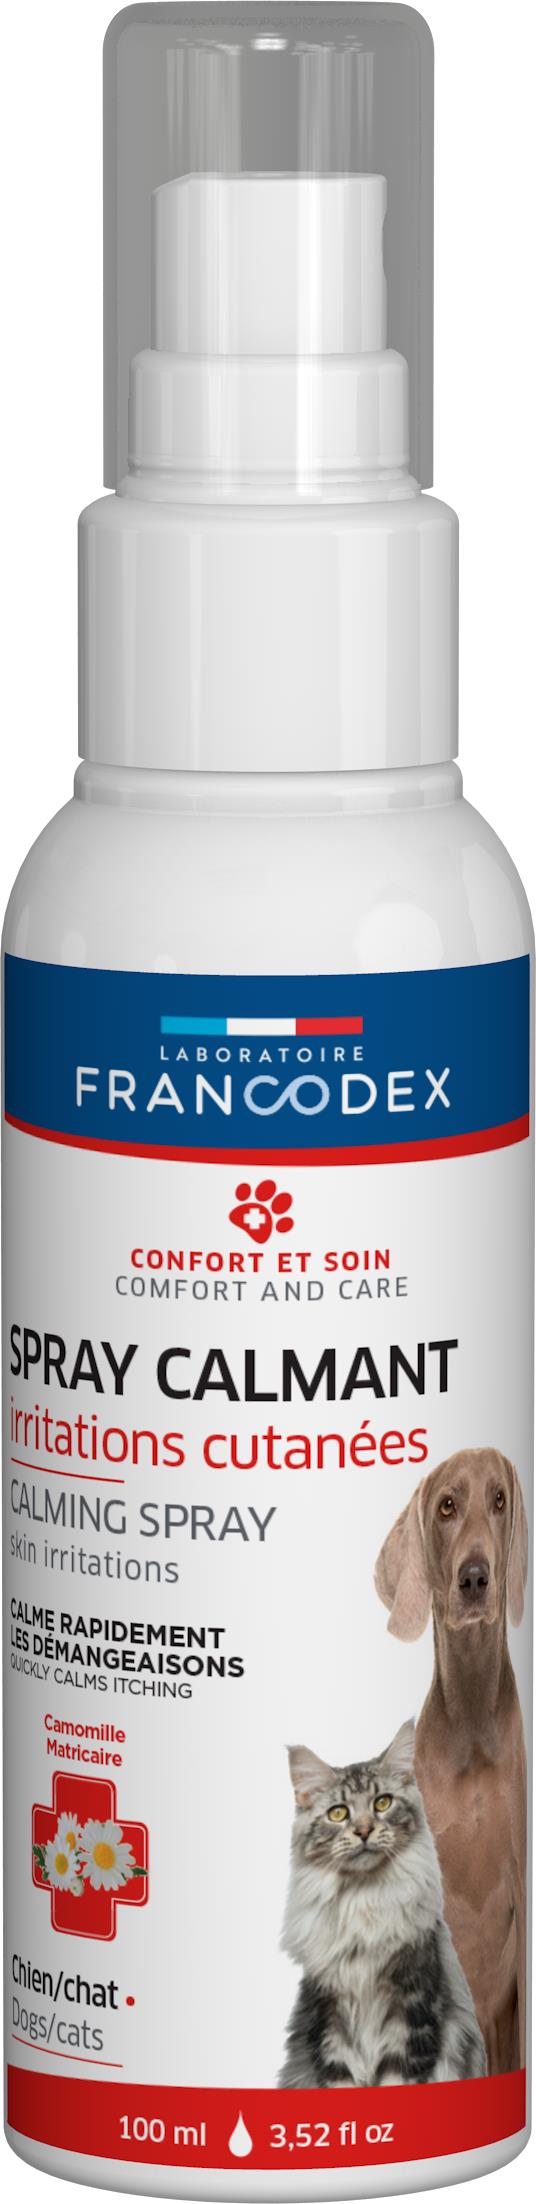 Soin – Francodex Spray calmant irritations cutanées – 100 ml 982700